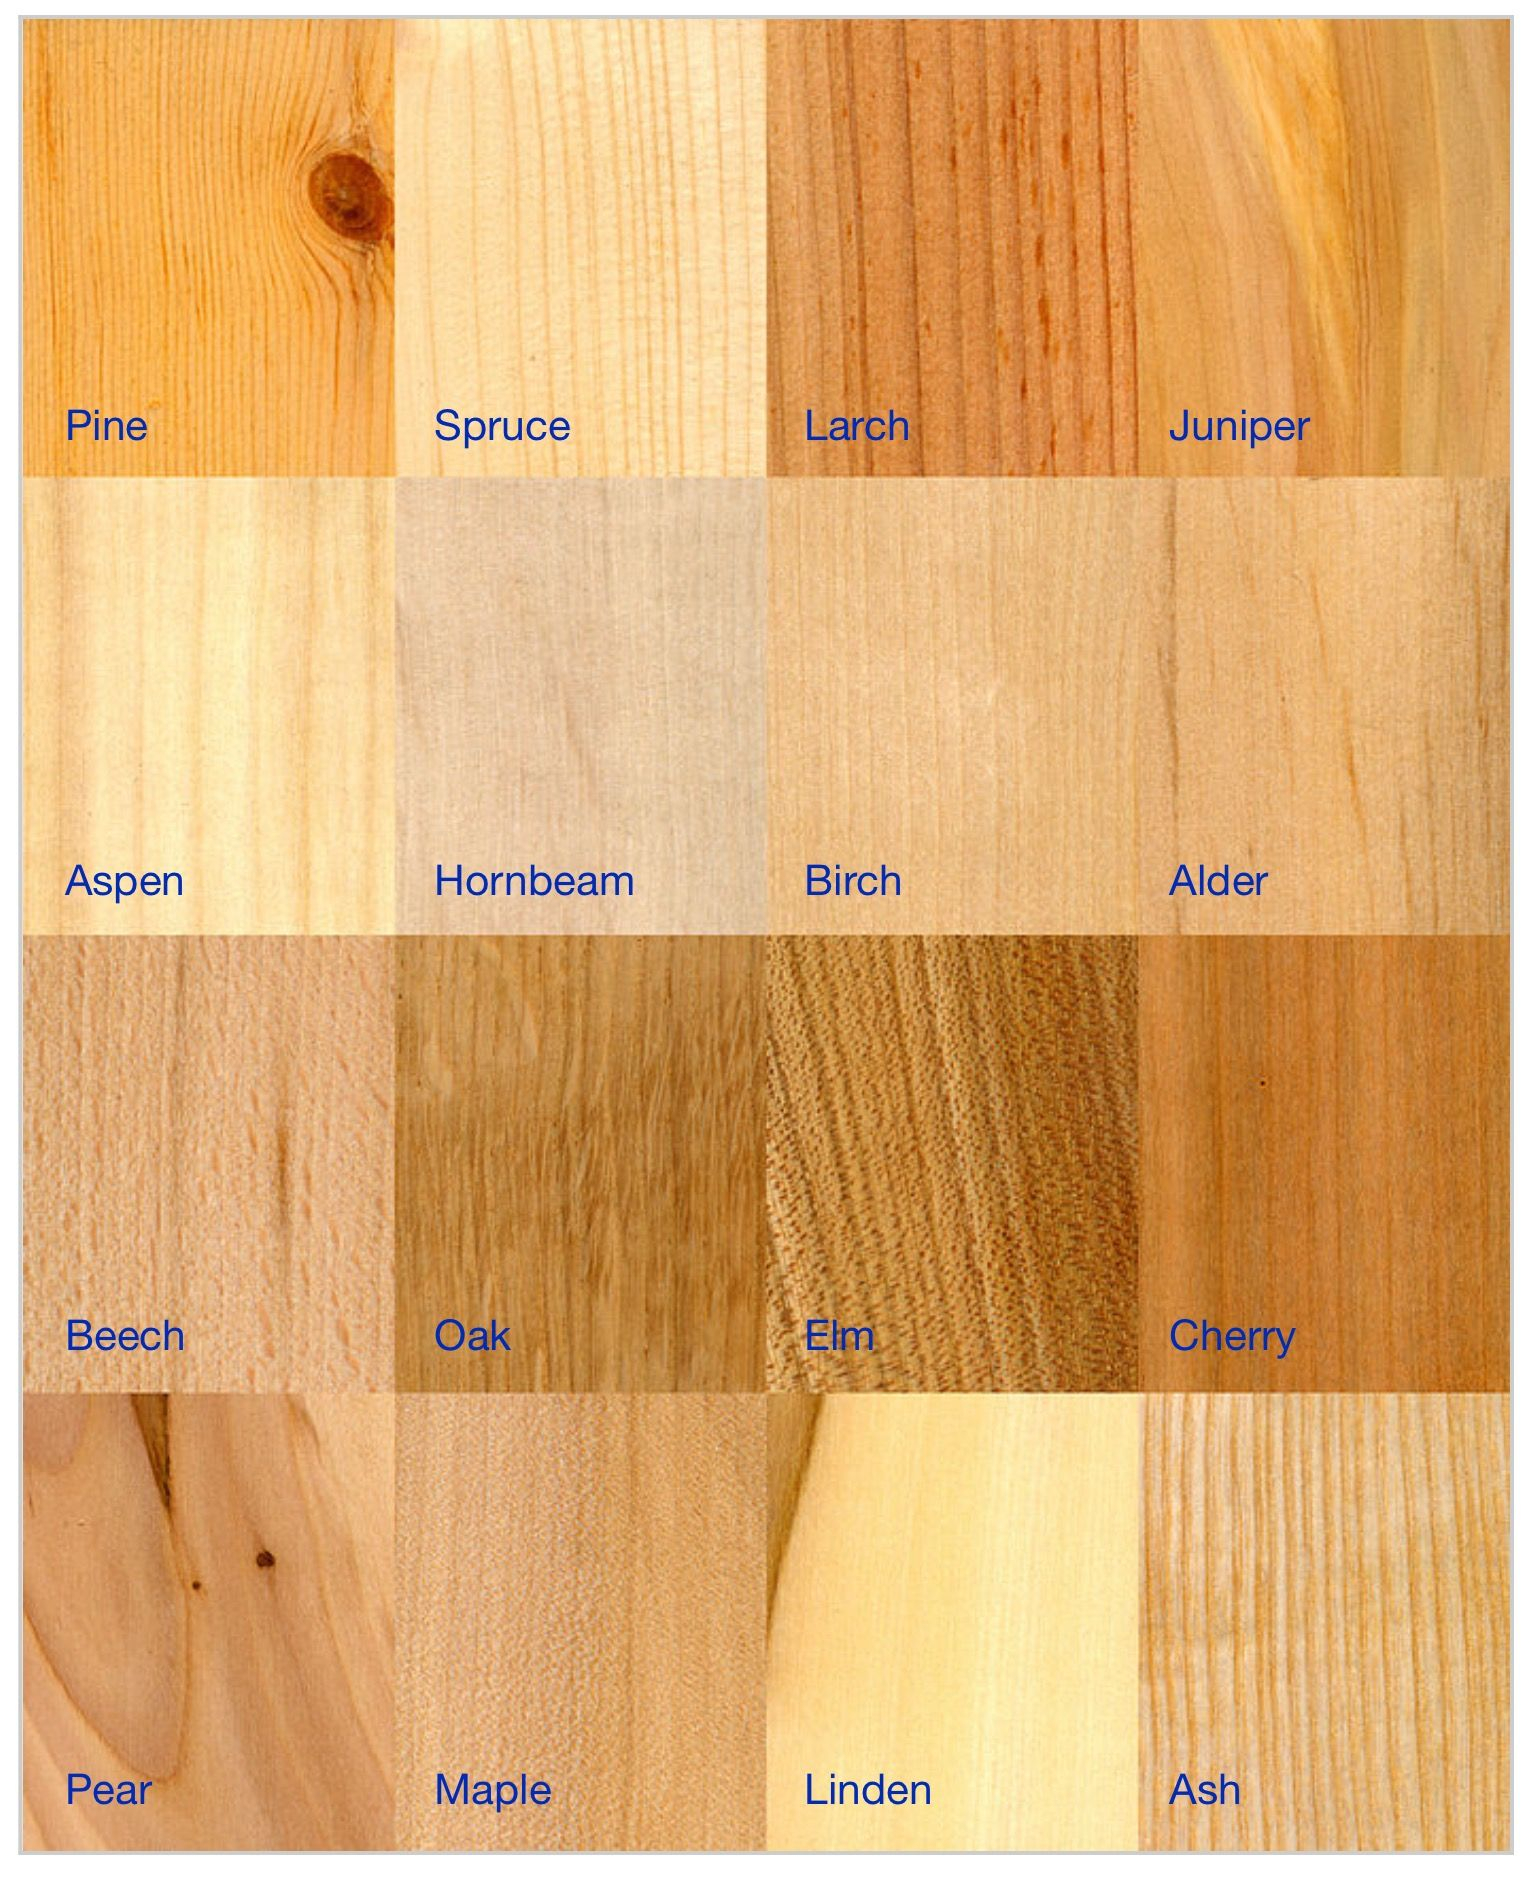 Натуральный цвет древесины зависит от породы